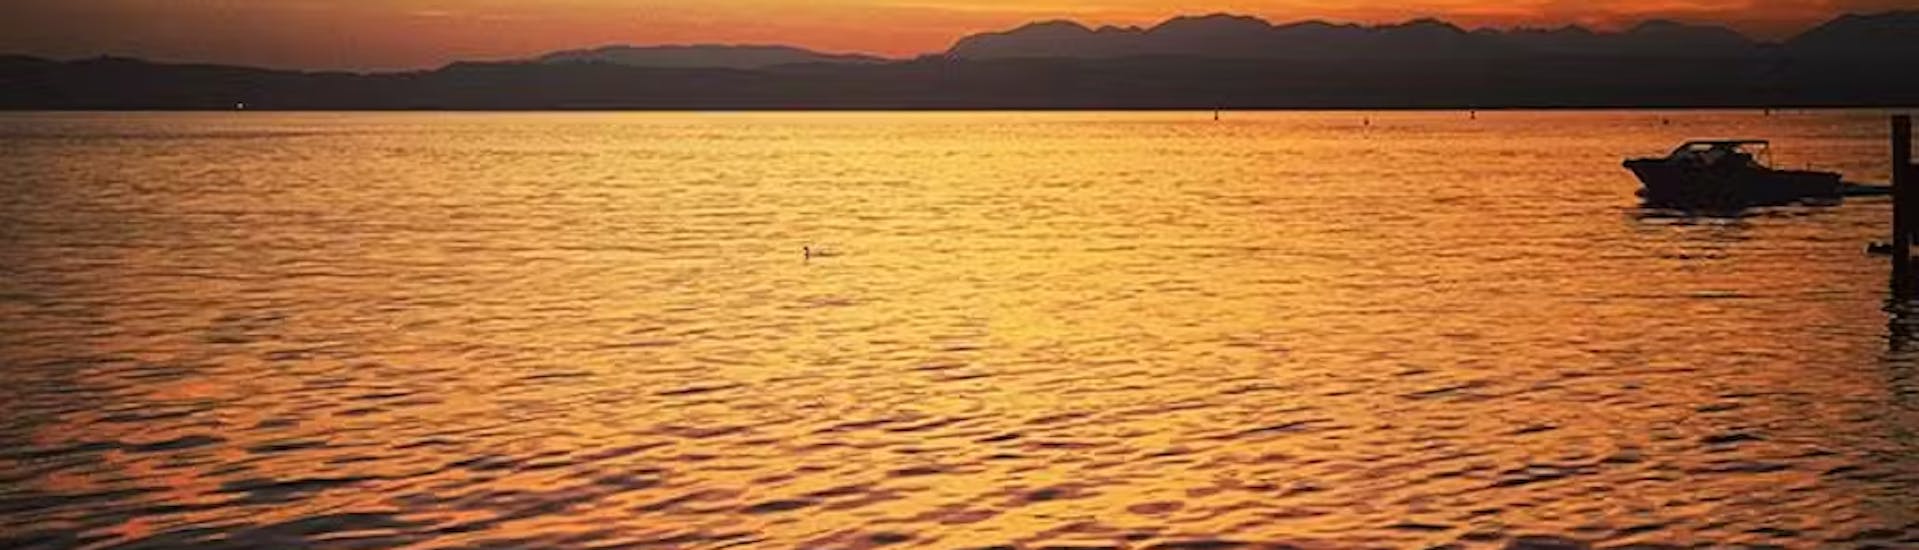 Giro in barca al tramonto intorno al Lago di Garda.